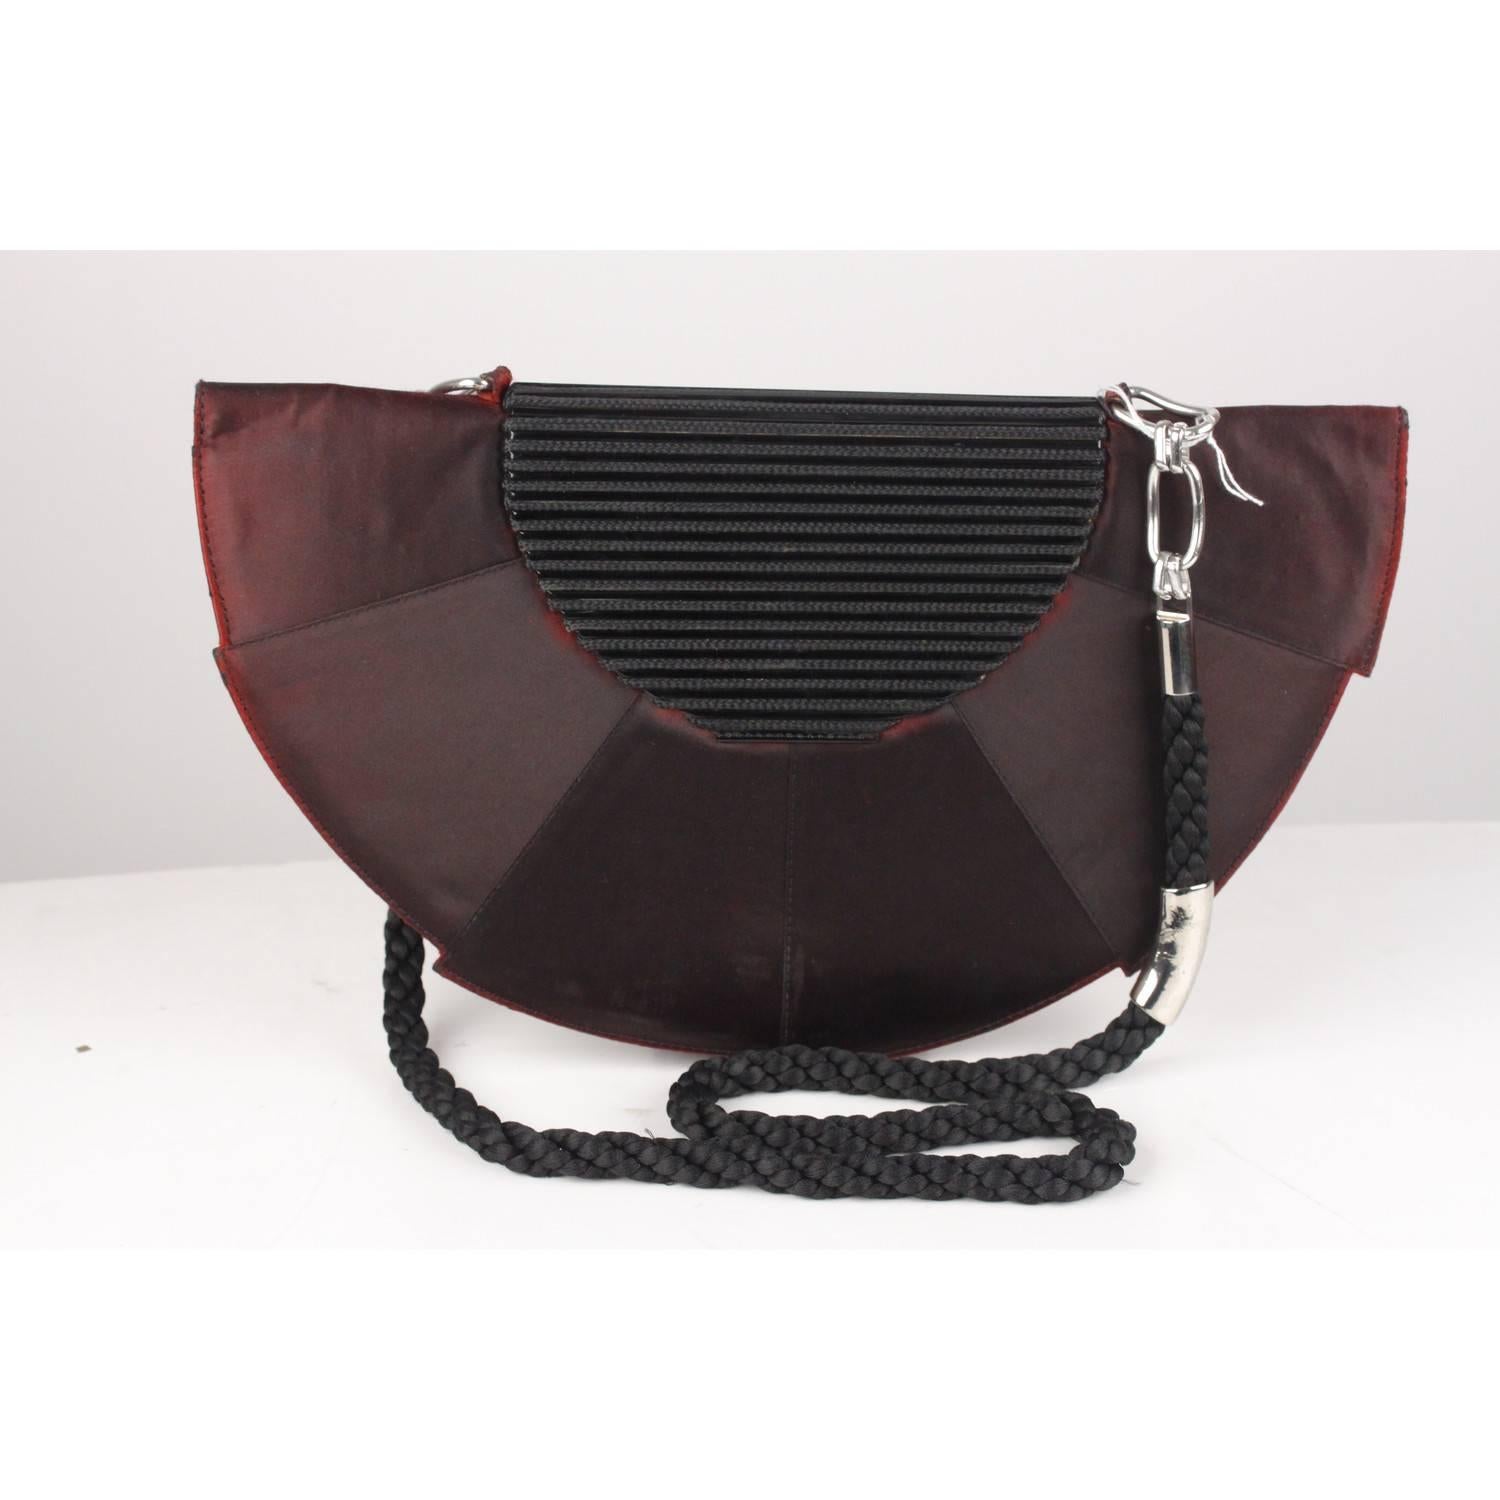 Gianni Versace Vintage Half Moon Clutch Shoulder Bag or Purse 1